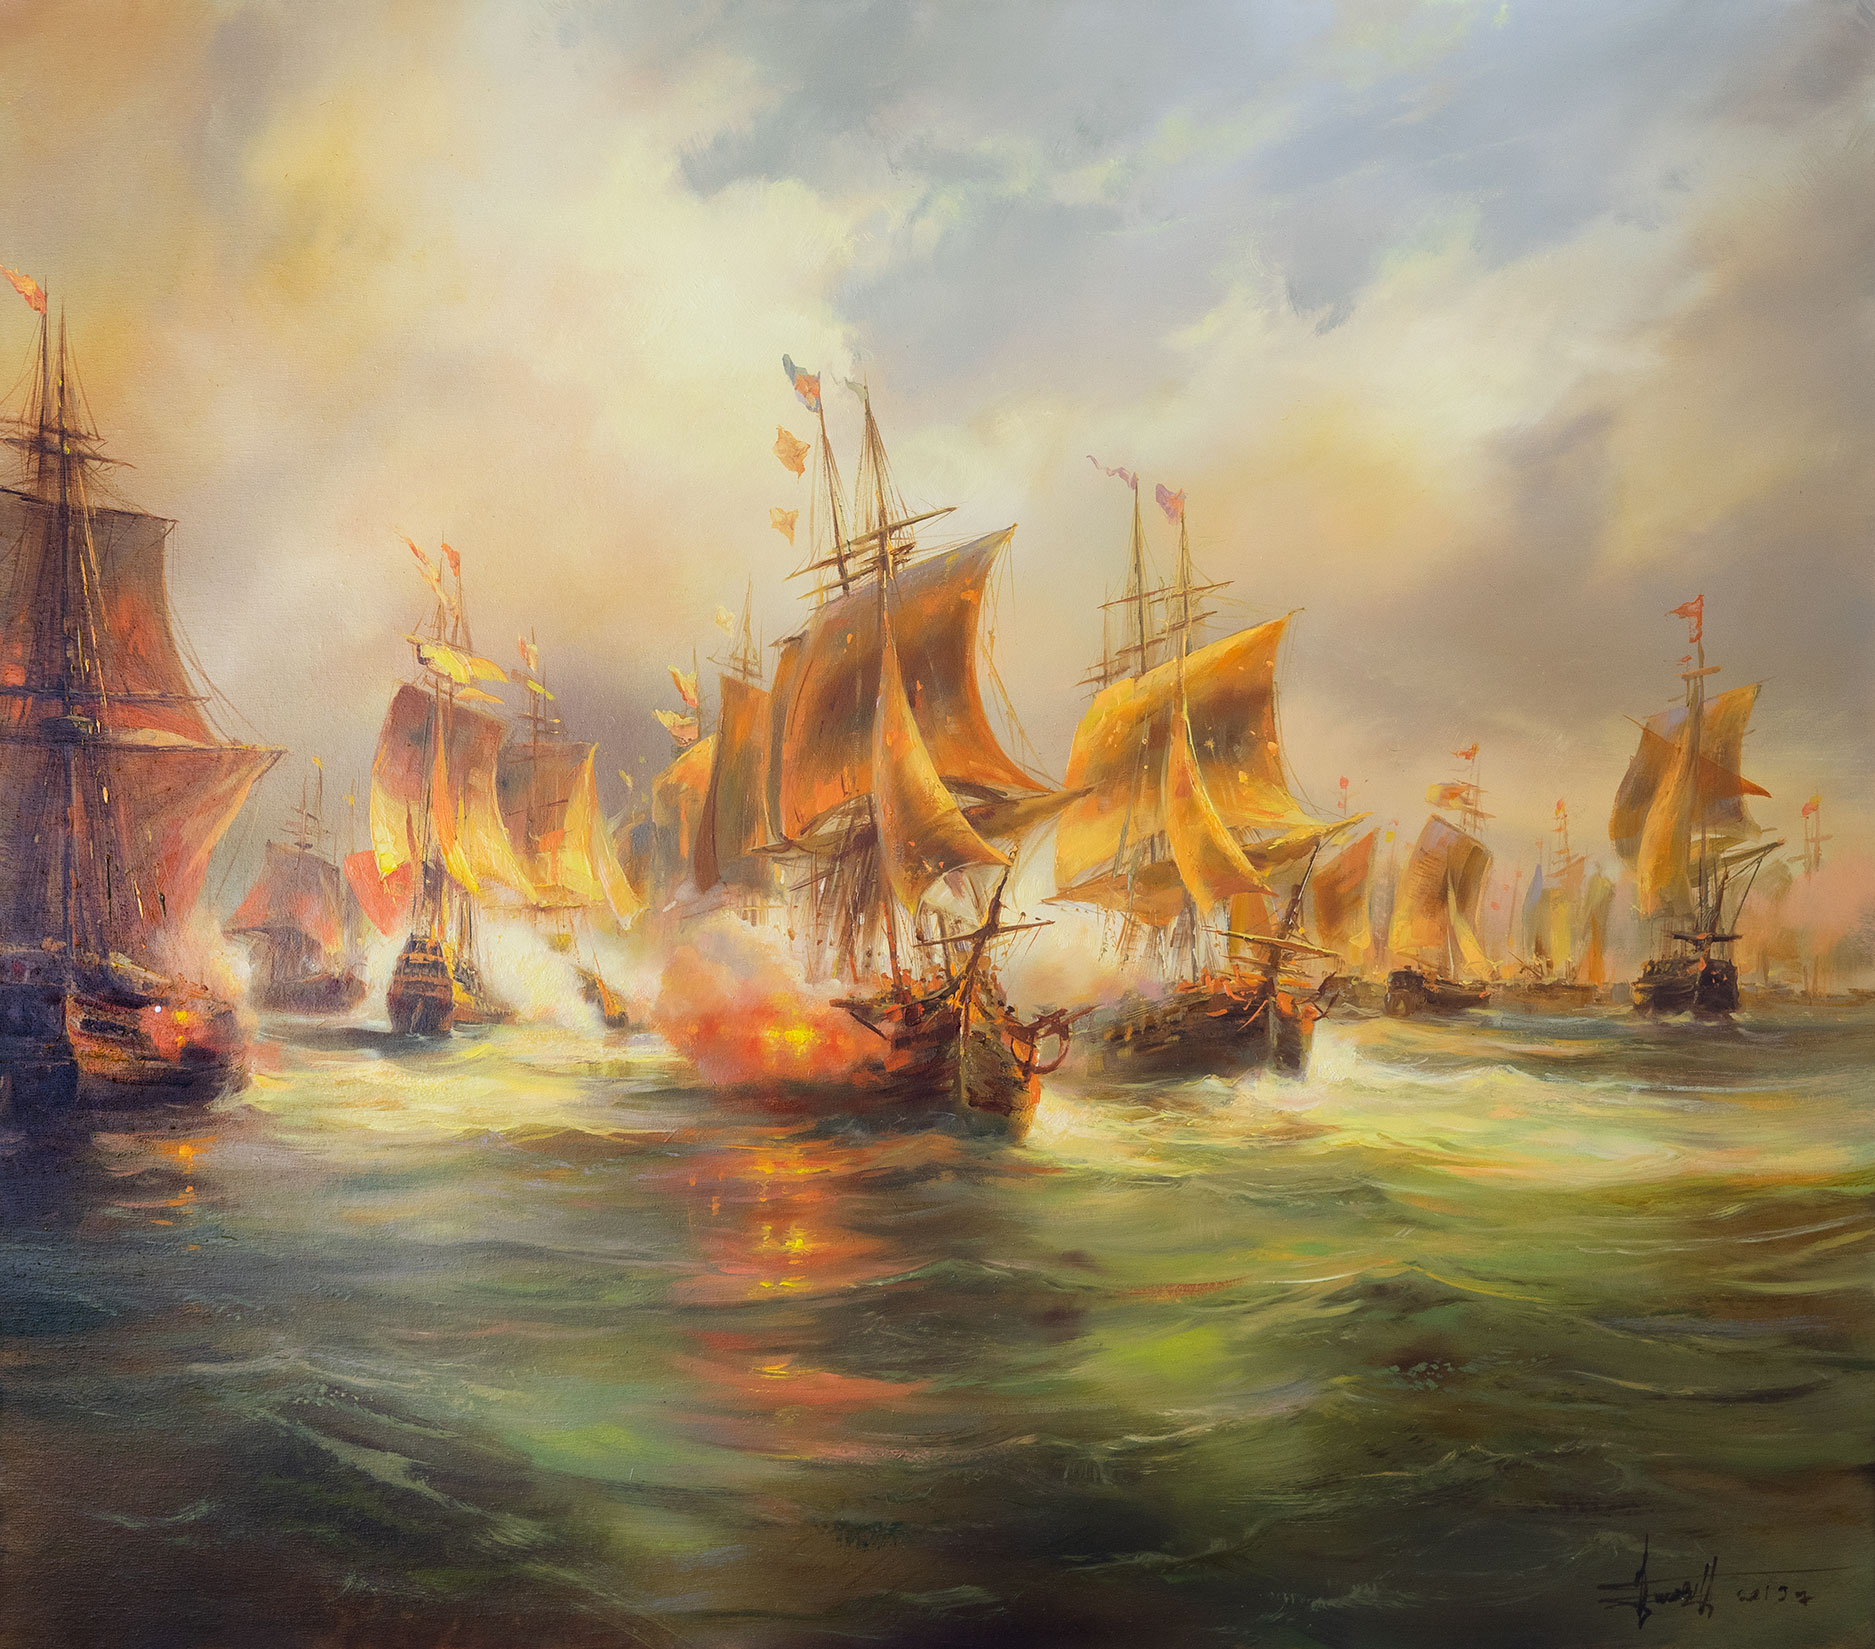 Sea Battle - 1, Dmitry Balakhonov, Buy the painting Oil